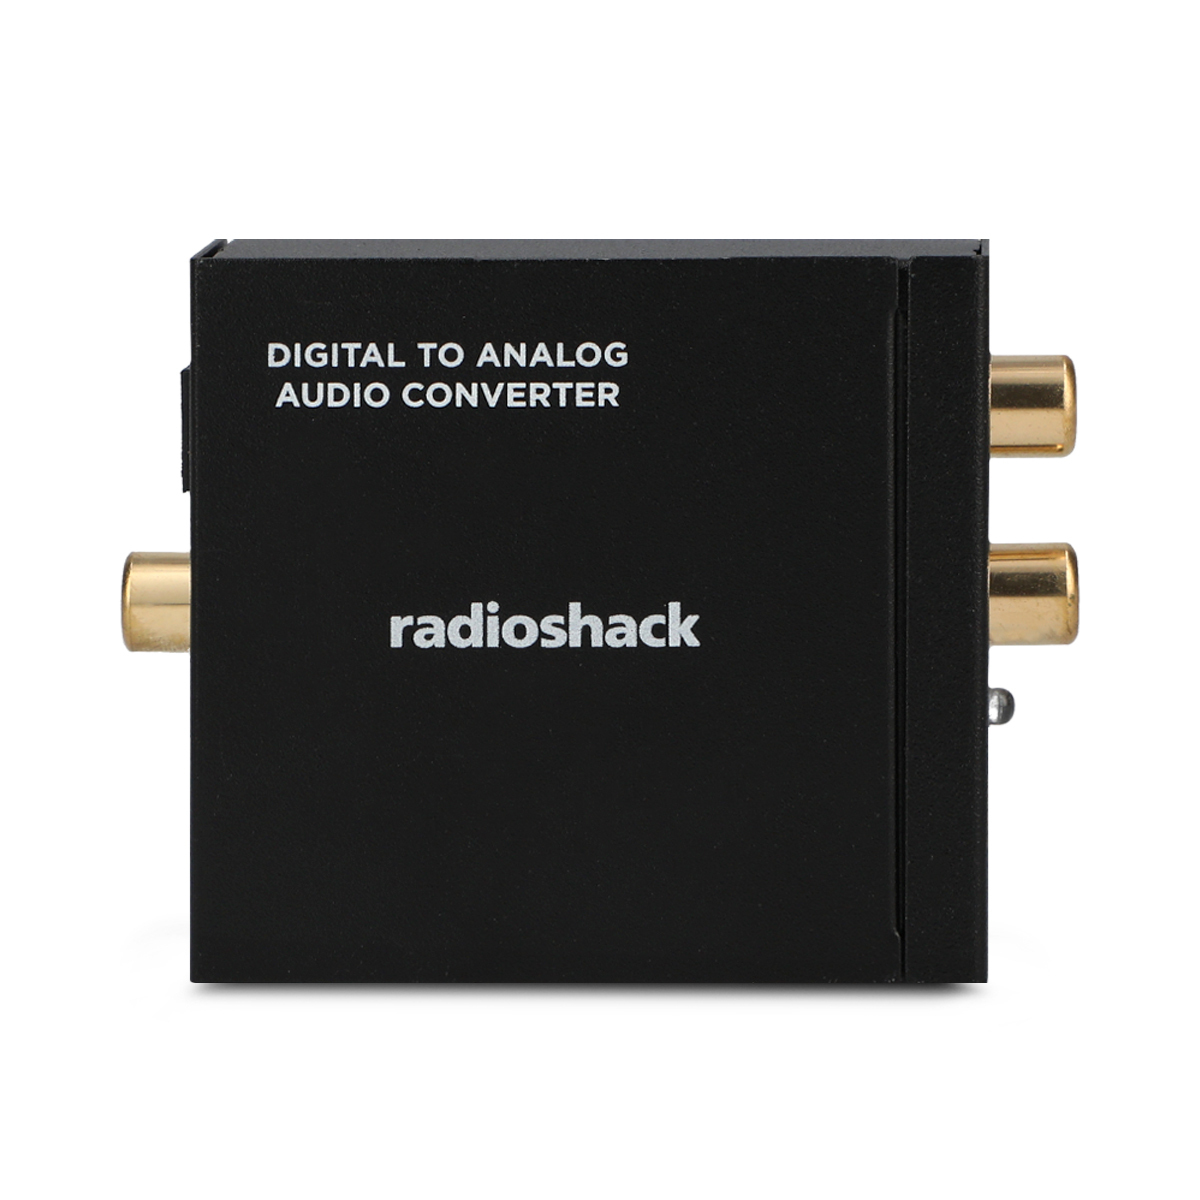 Cable de Audio Estéreo RCA a RCA RadioShack / 1.82 m / Plástico / Negro, Cables y Adaptadores de Video, TV y Video, Originales RadioShack, Todas, Categoría